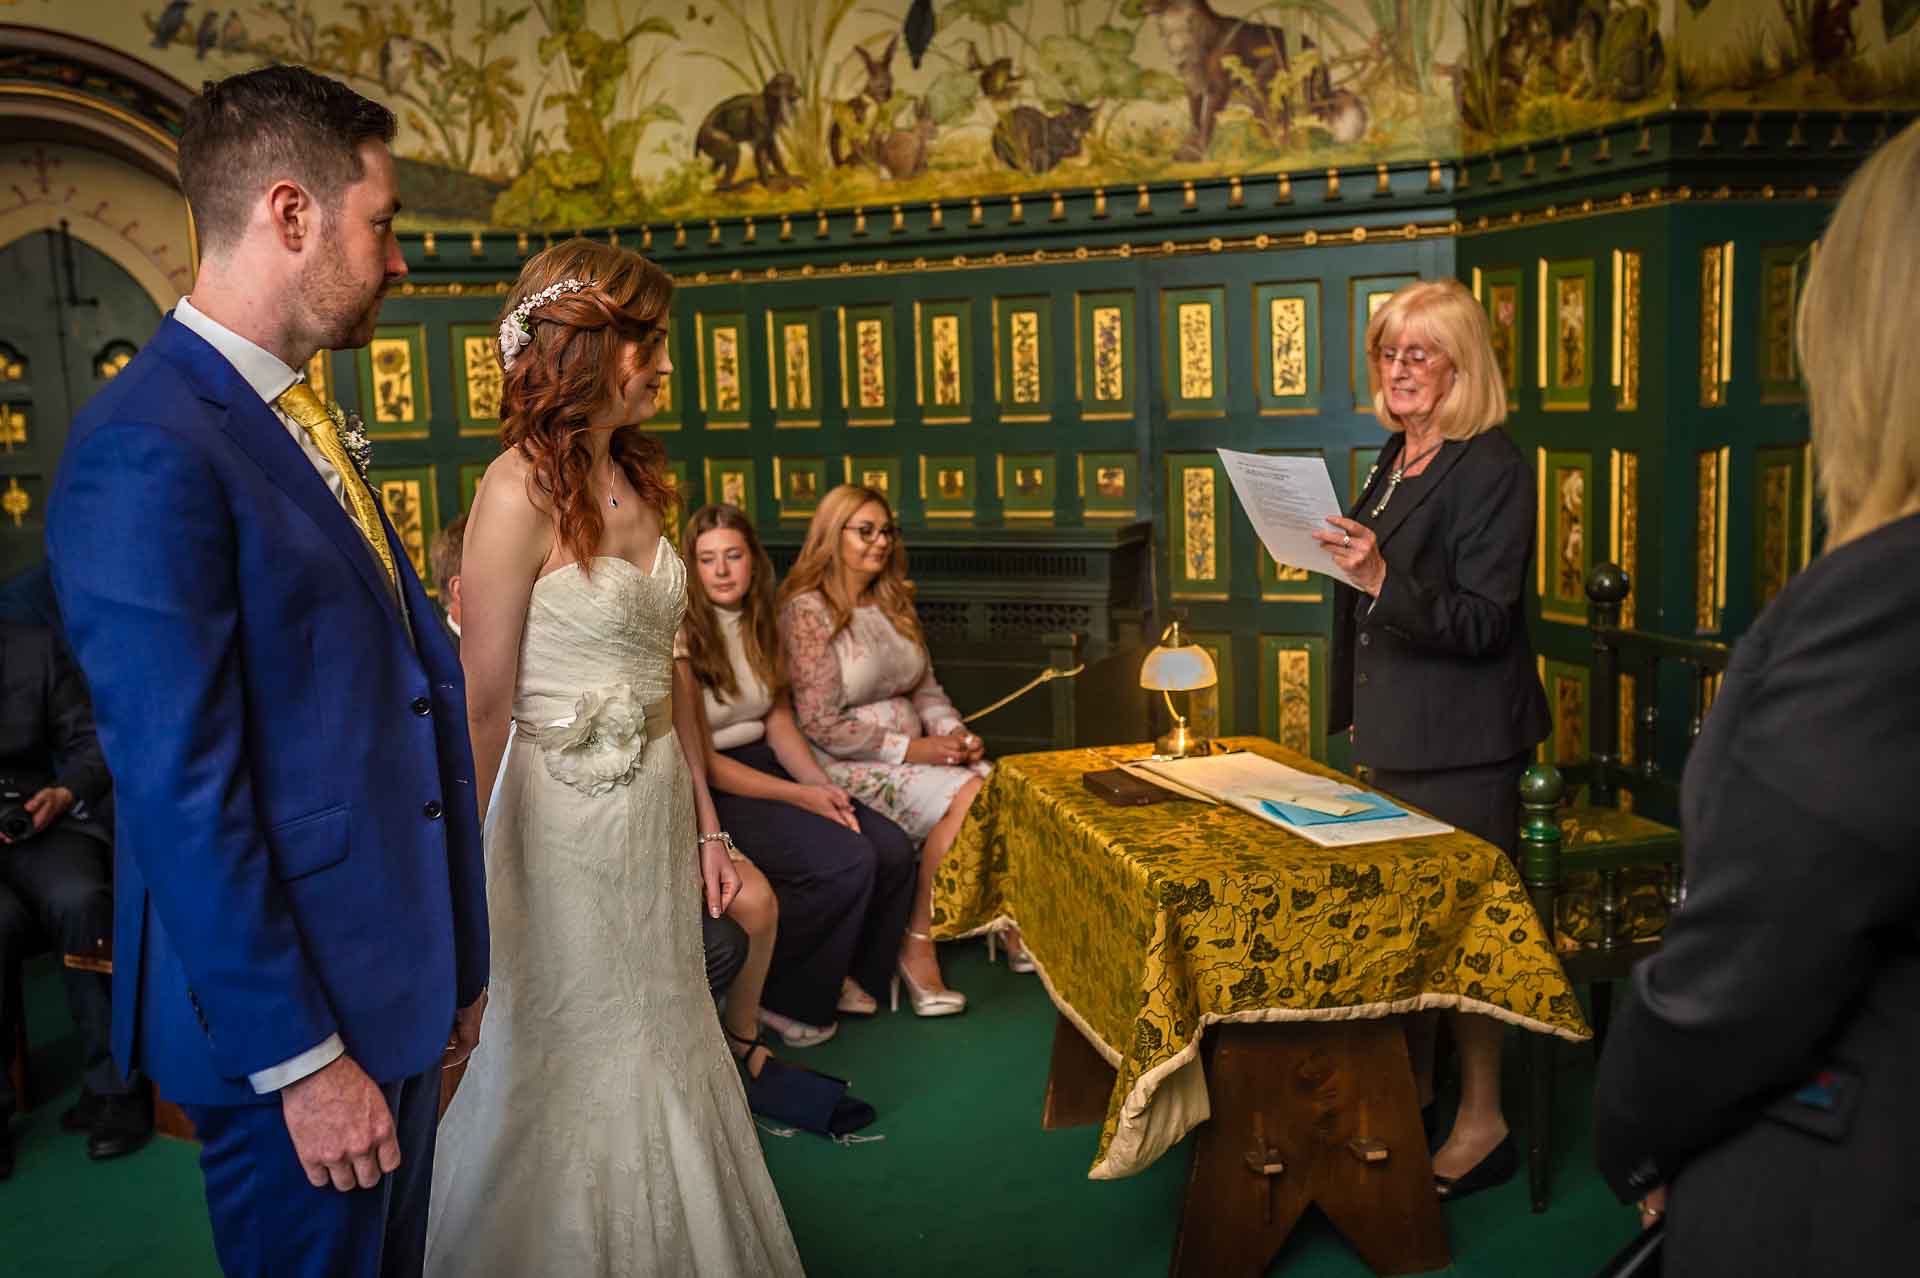 Castell Coch Wedding Ceremony Reading by Registrar